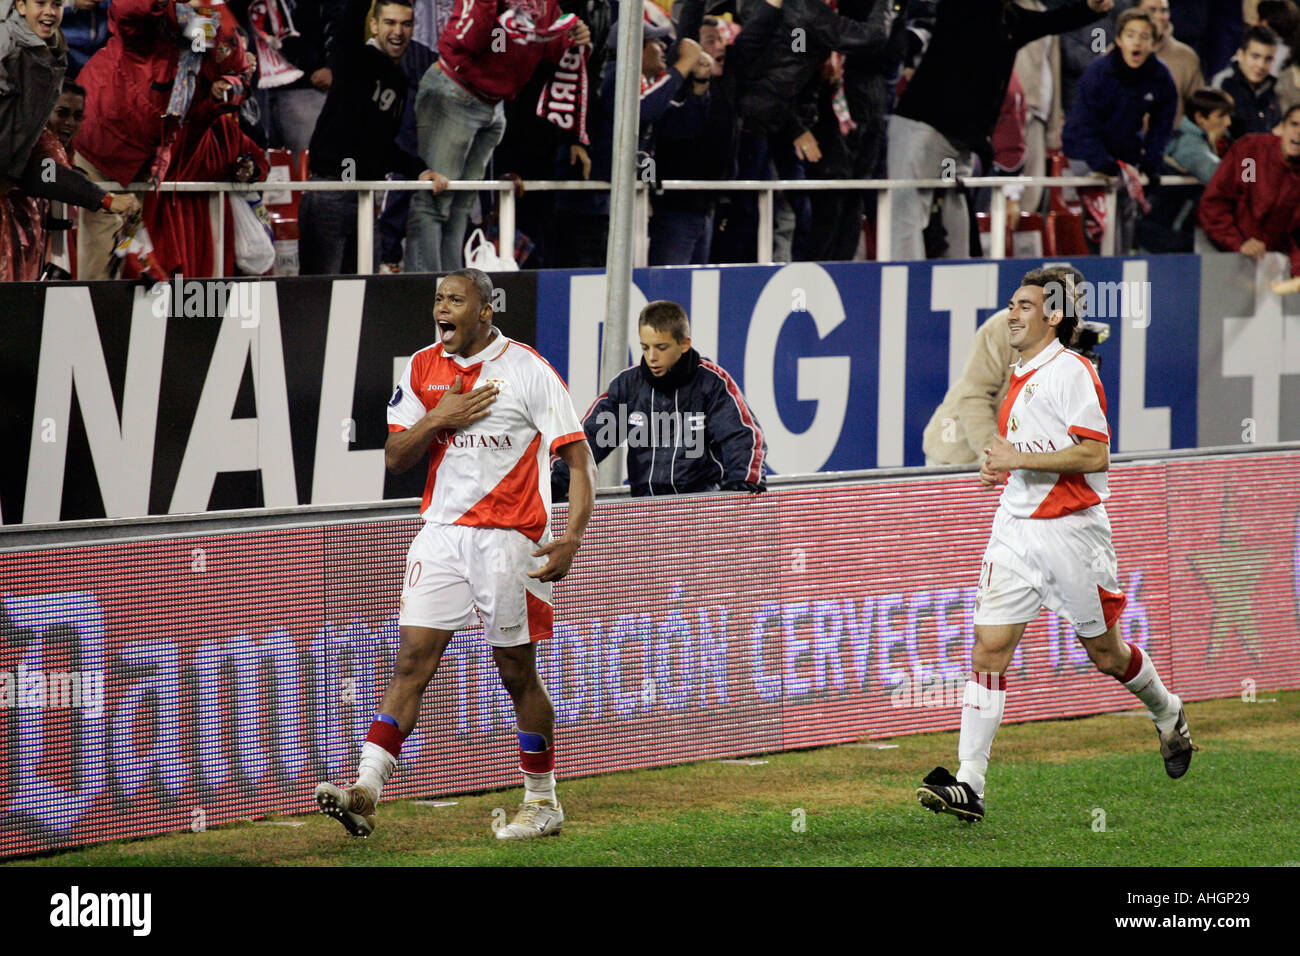 Julio Cesar Baptista celebrates score of a goal Stock Photo